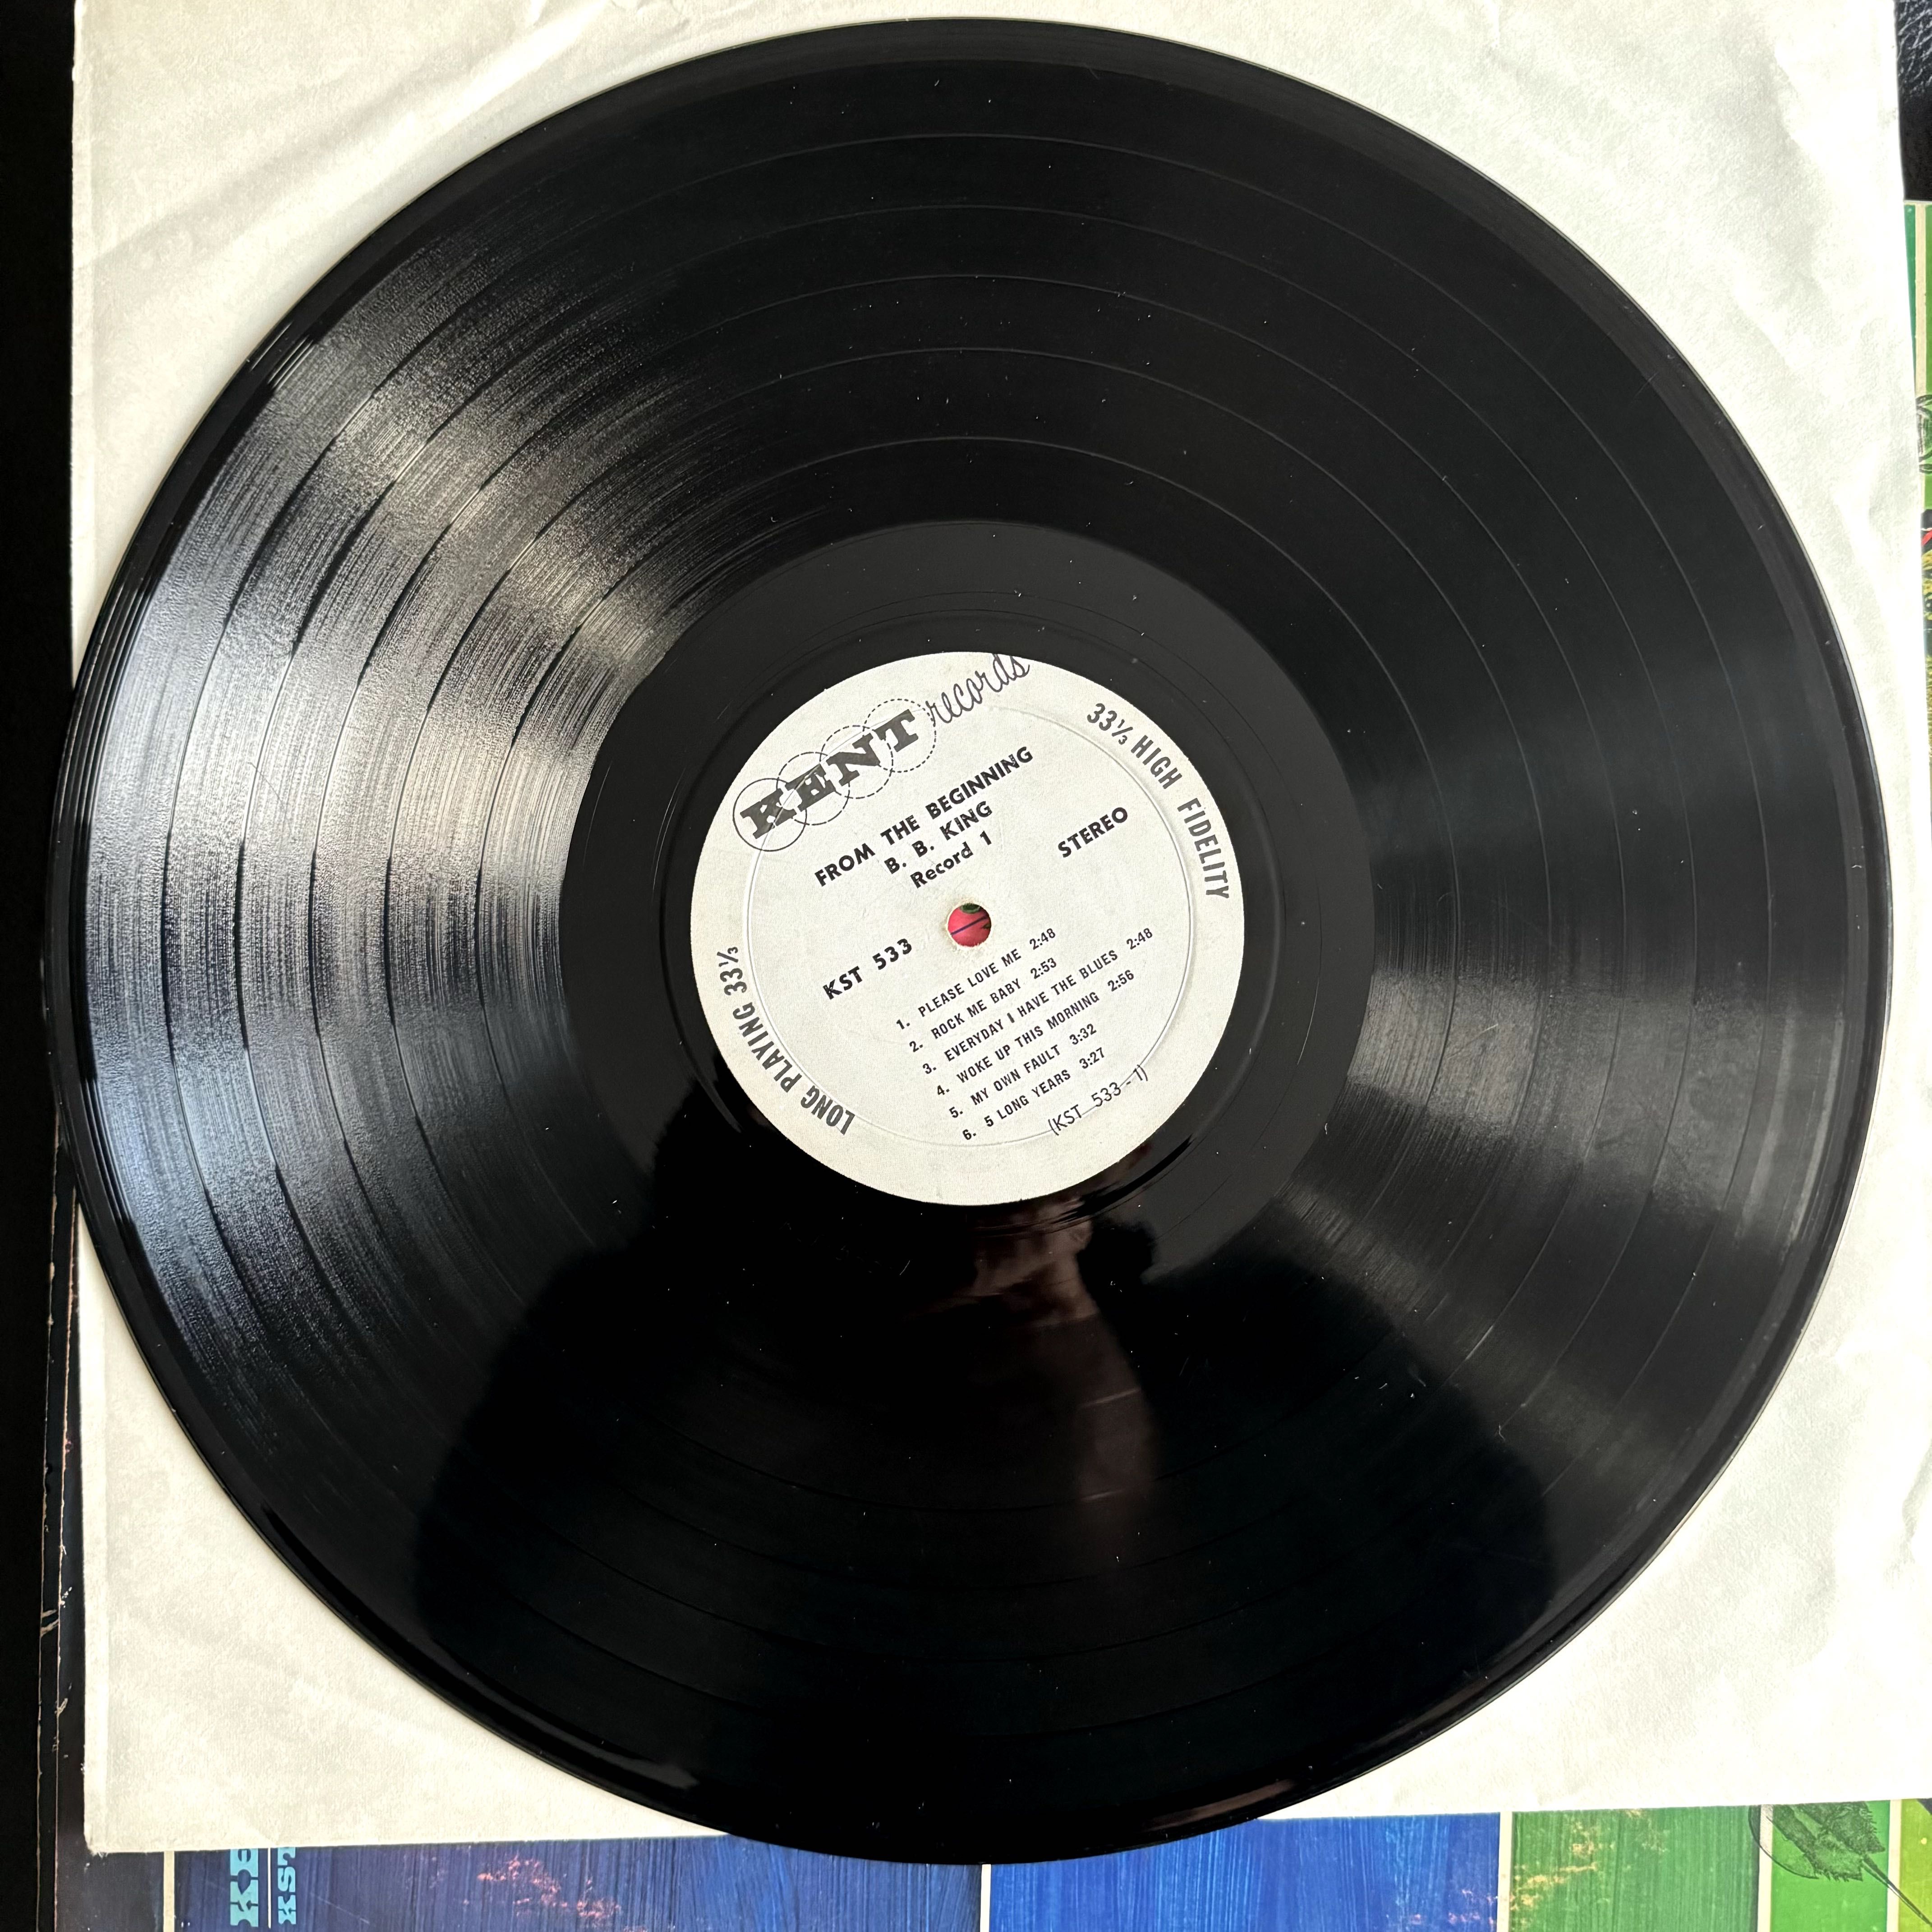 B.B. King – From The Beginning, disc vinil dublu LP, presa US '68